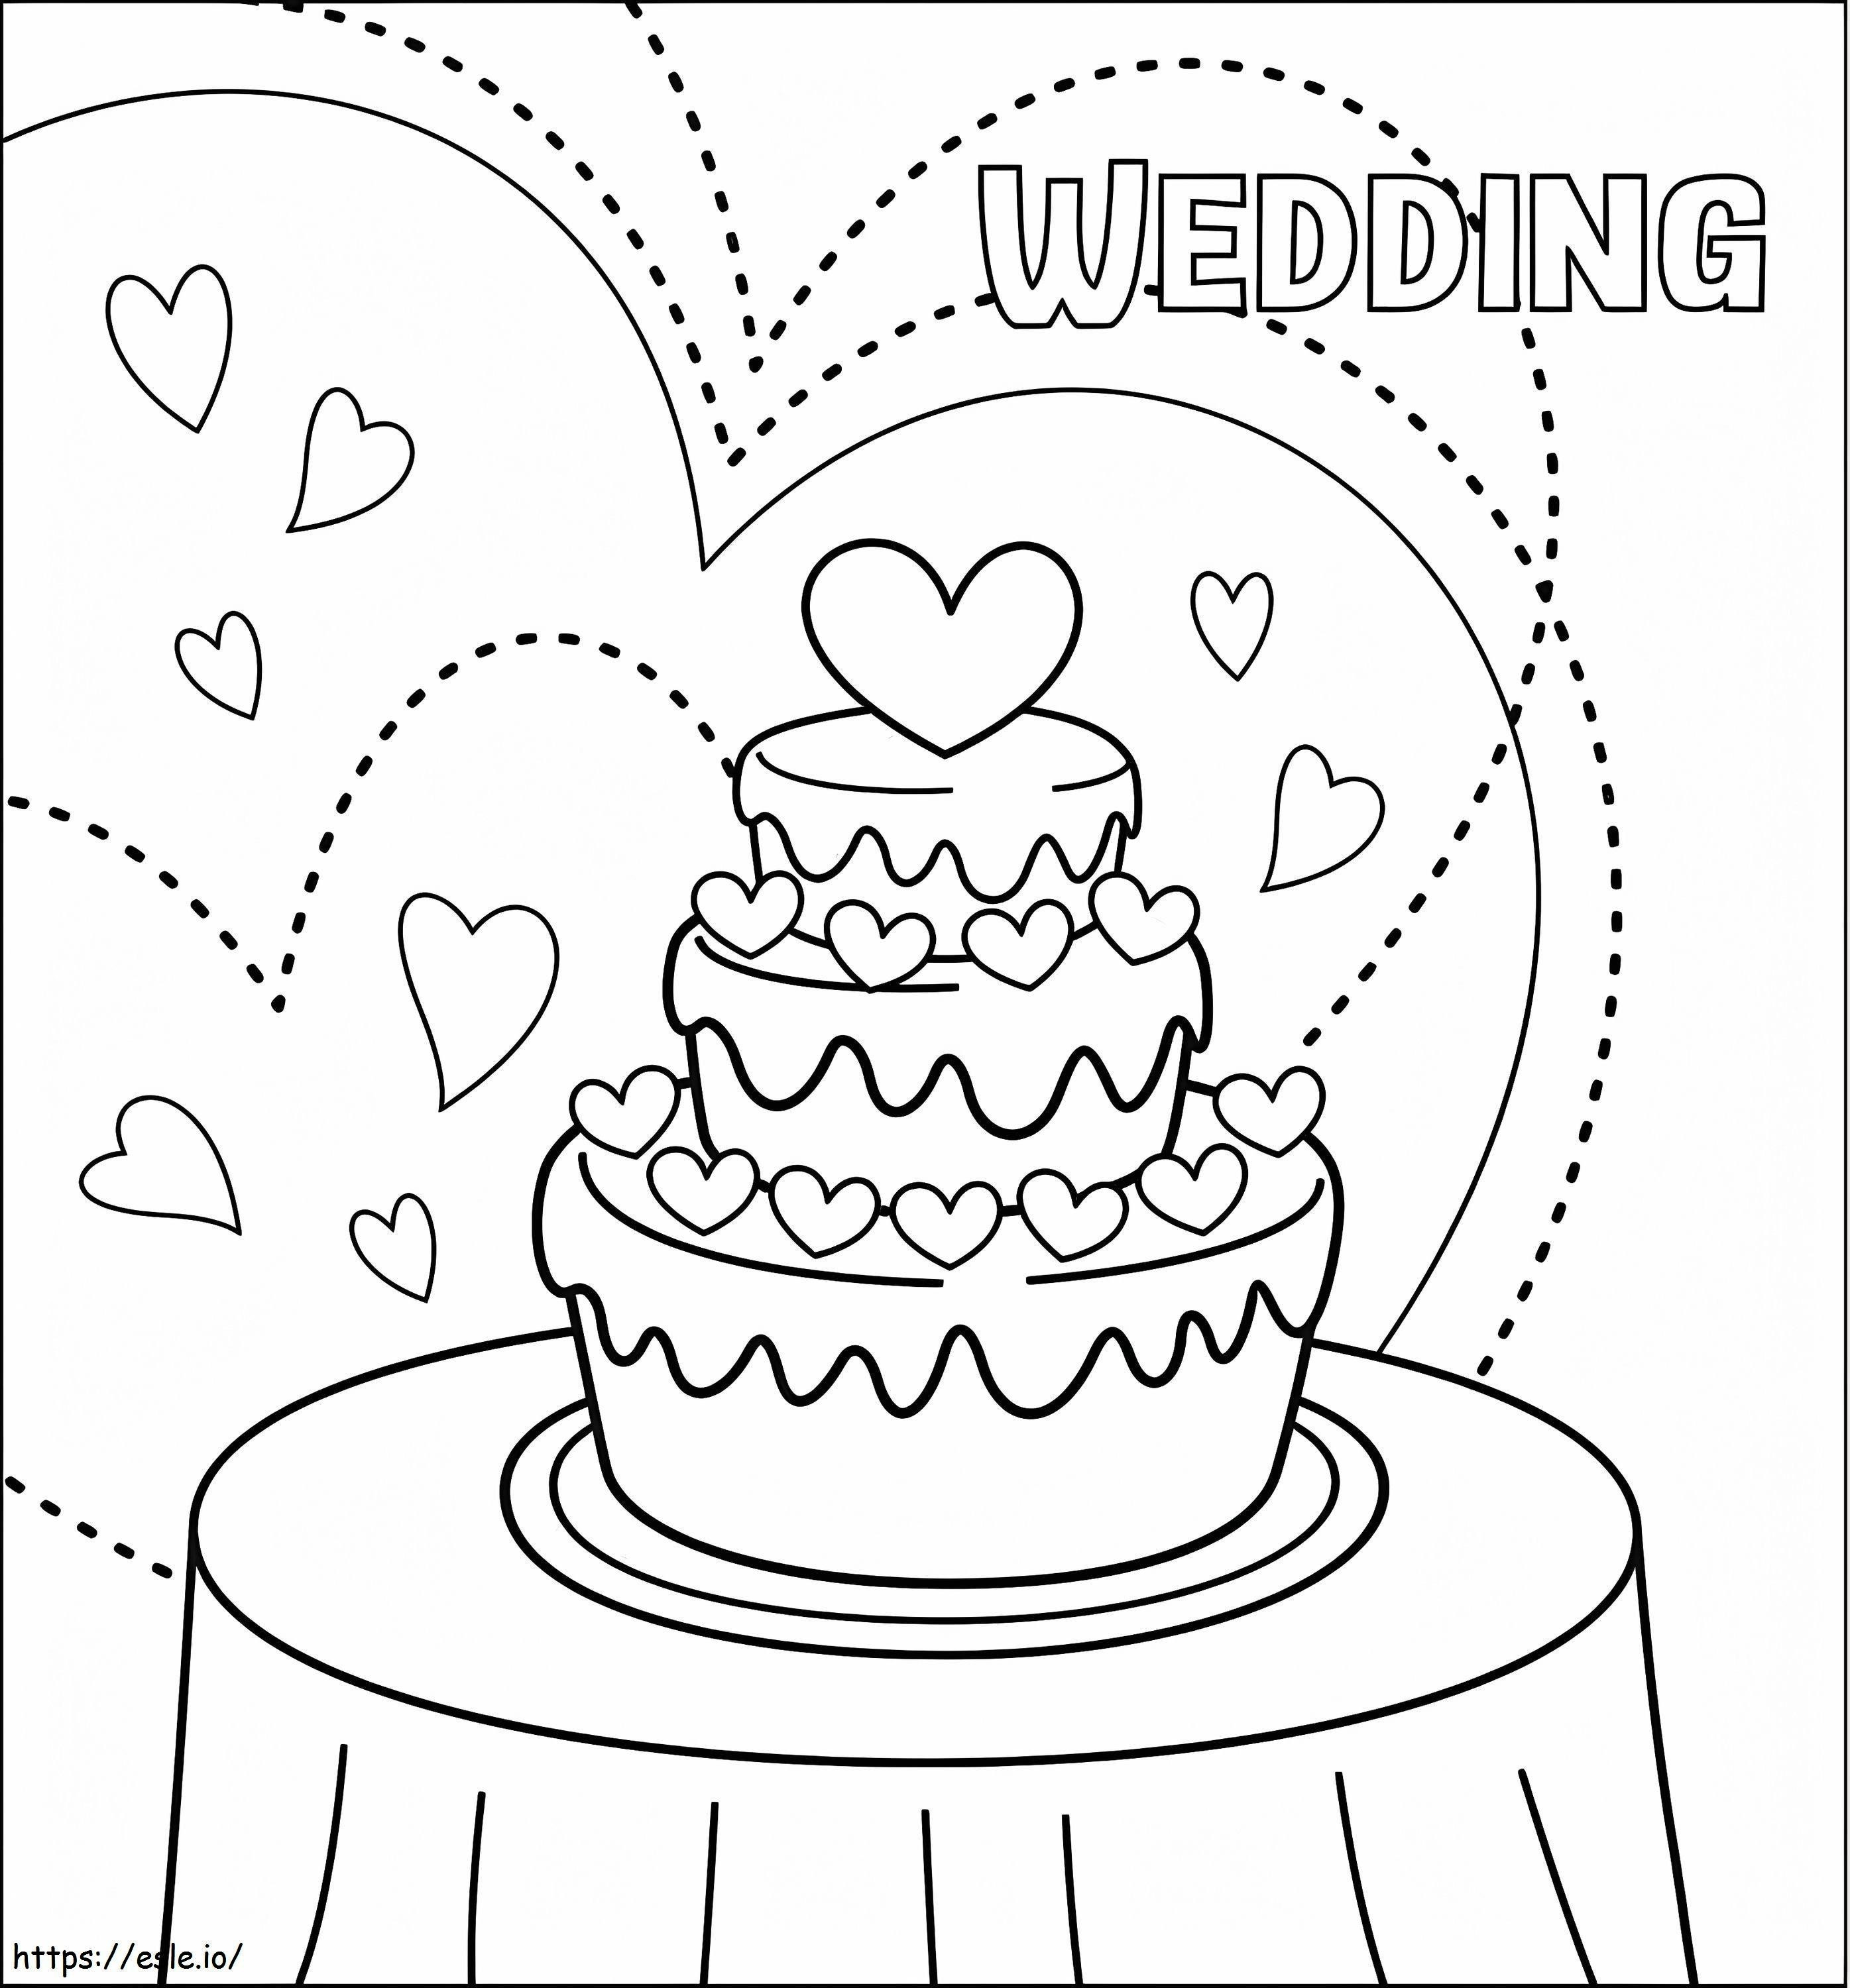 Düğün pastası boyama